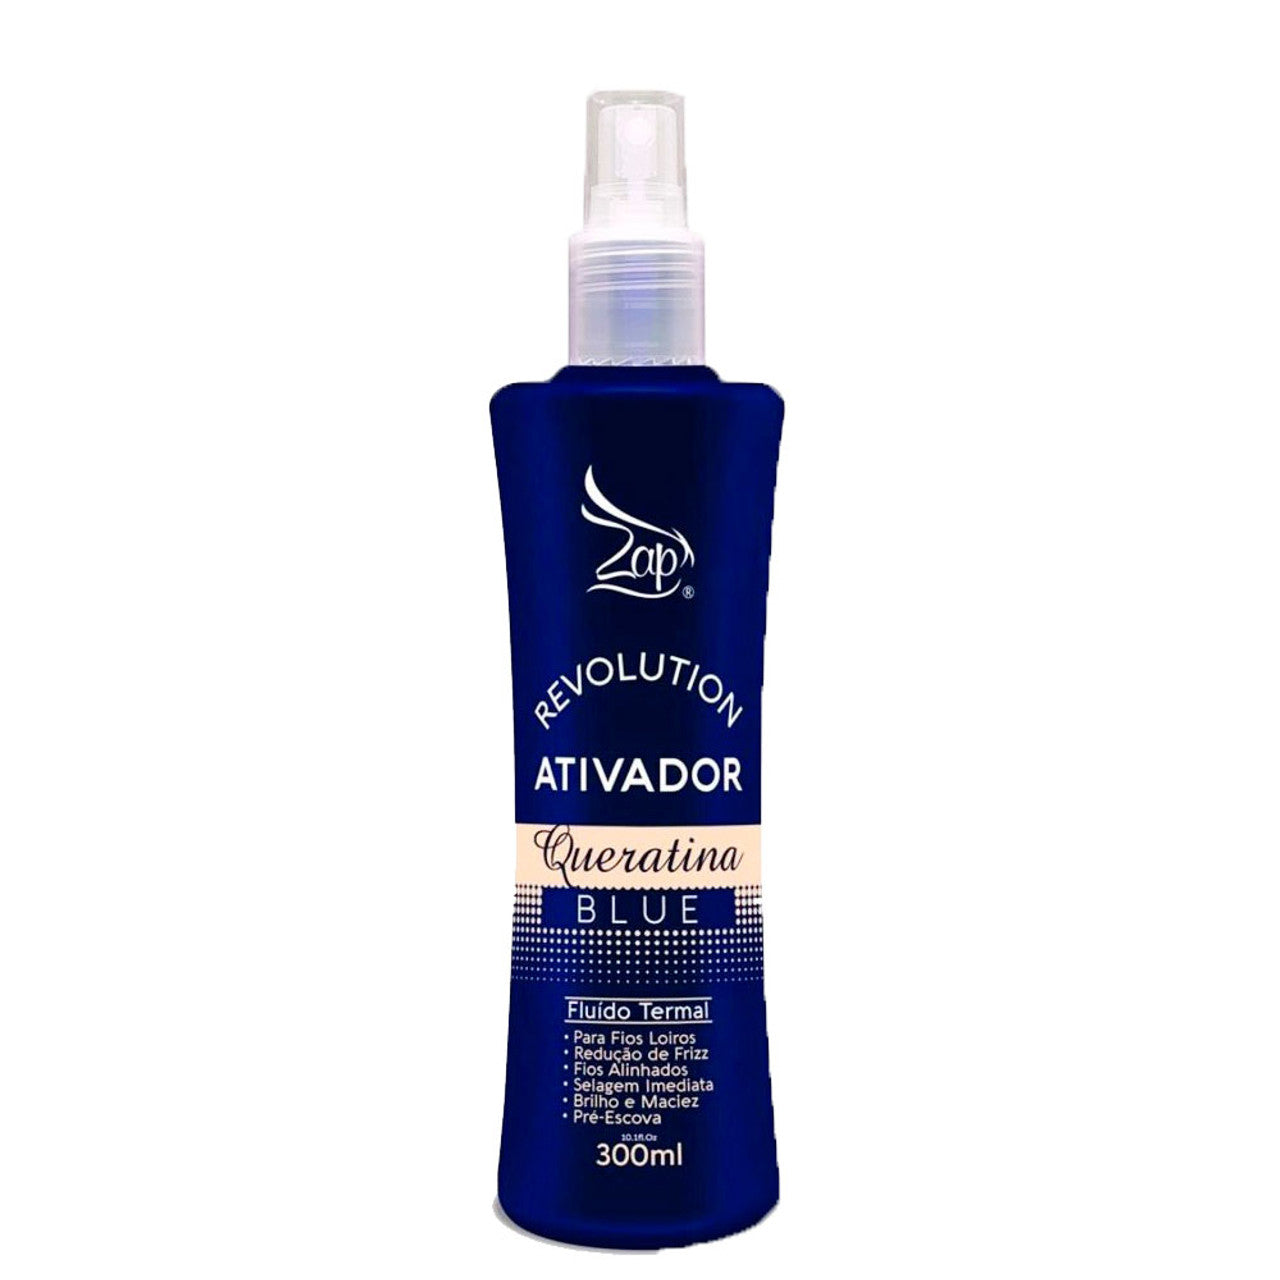 Zap Cosmeticos, Revolution Ativador Queratina Blue, olejek wykończeniowy do włosów, 300ml